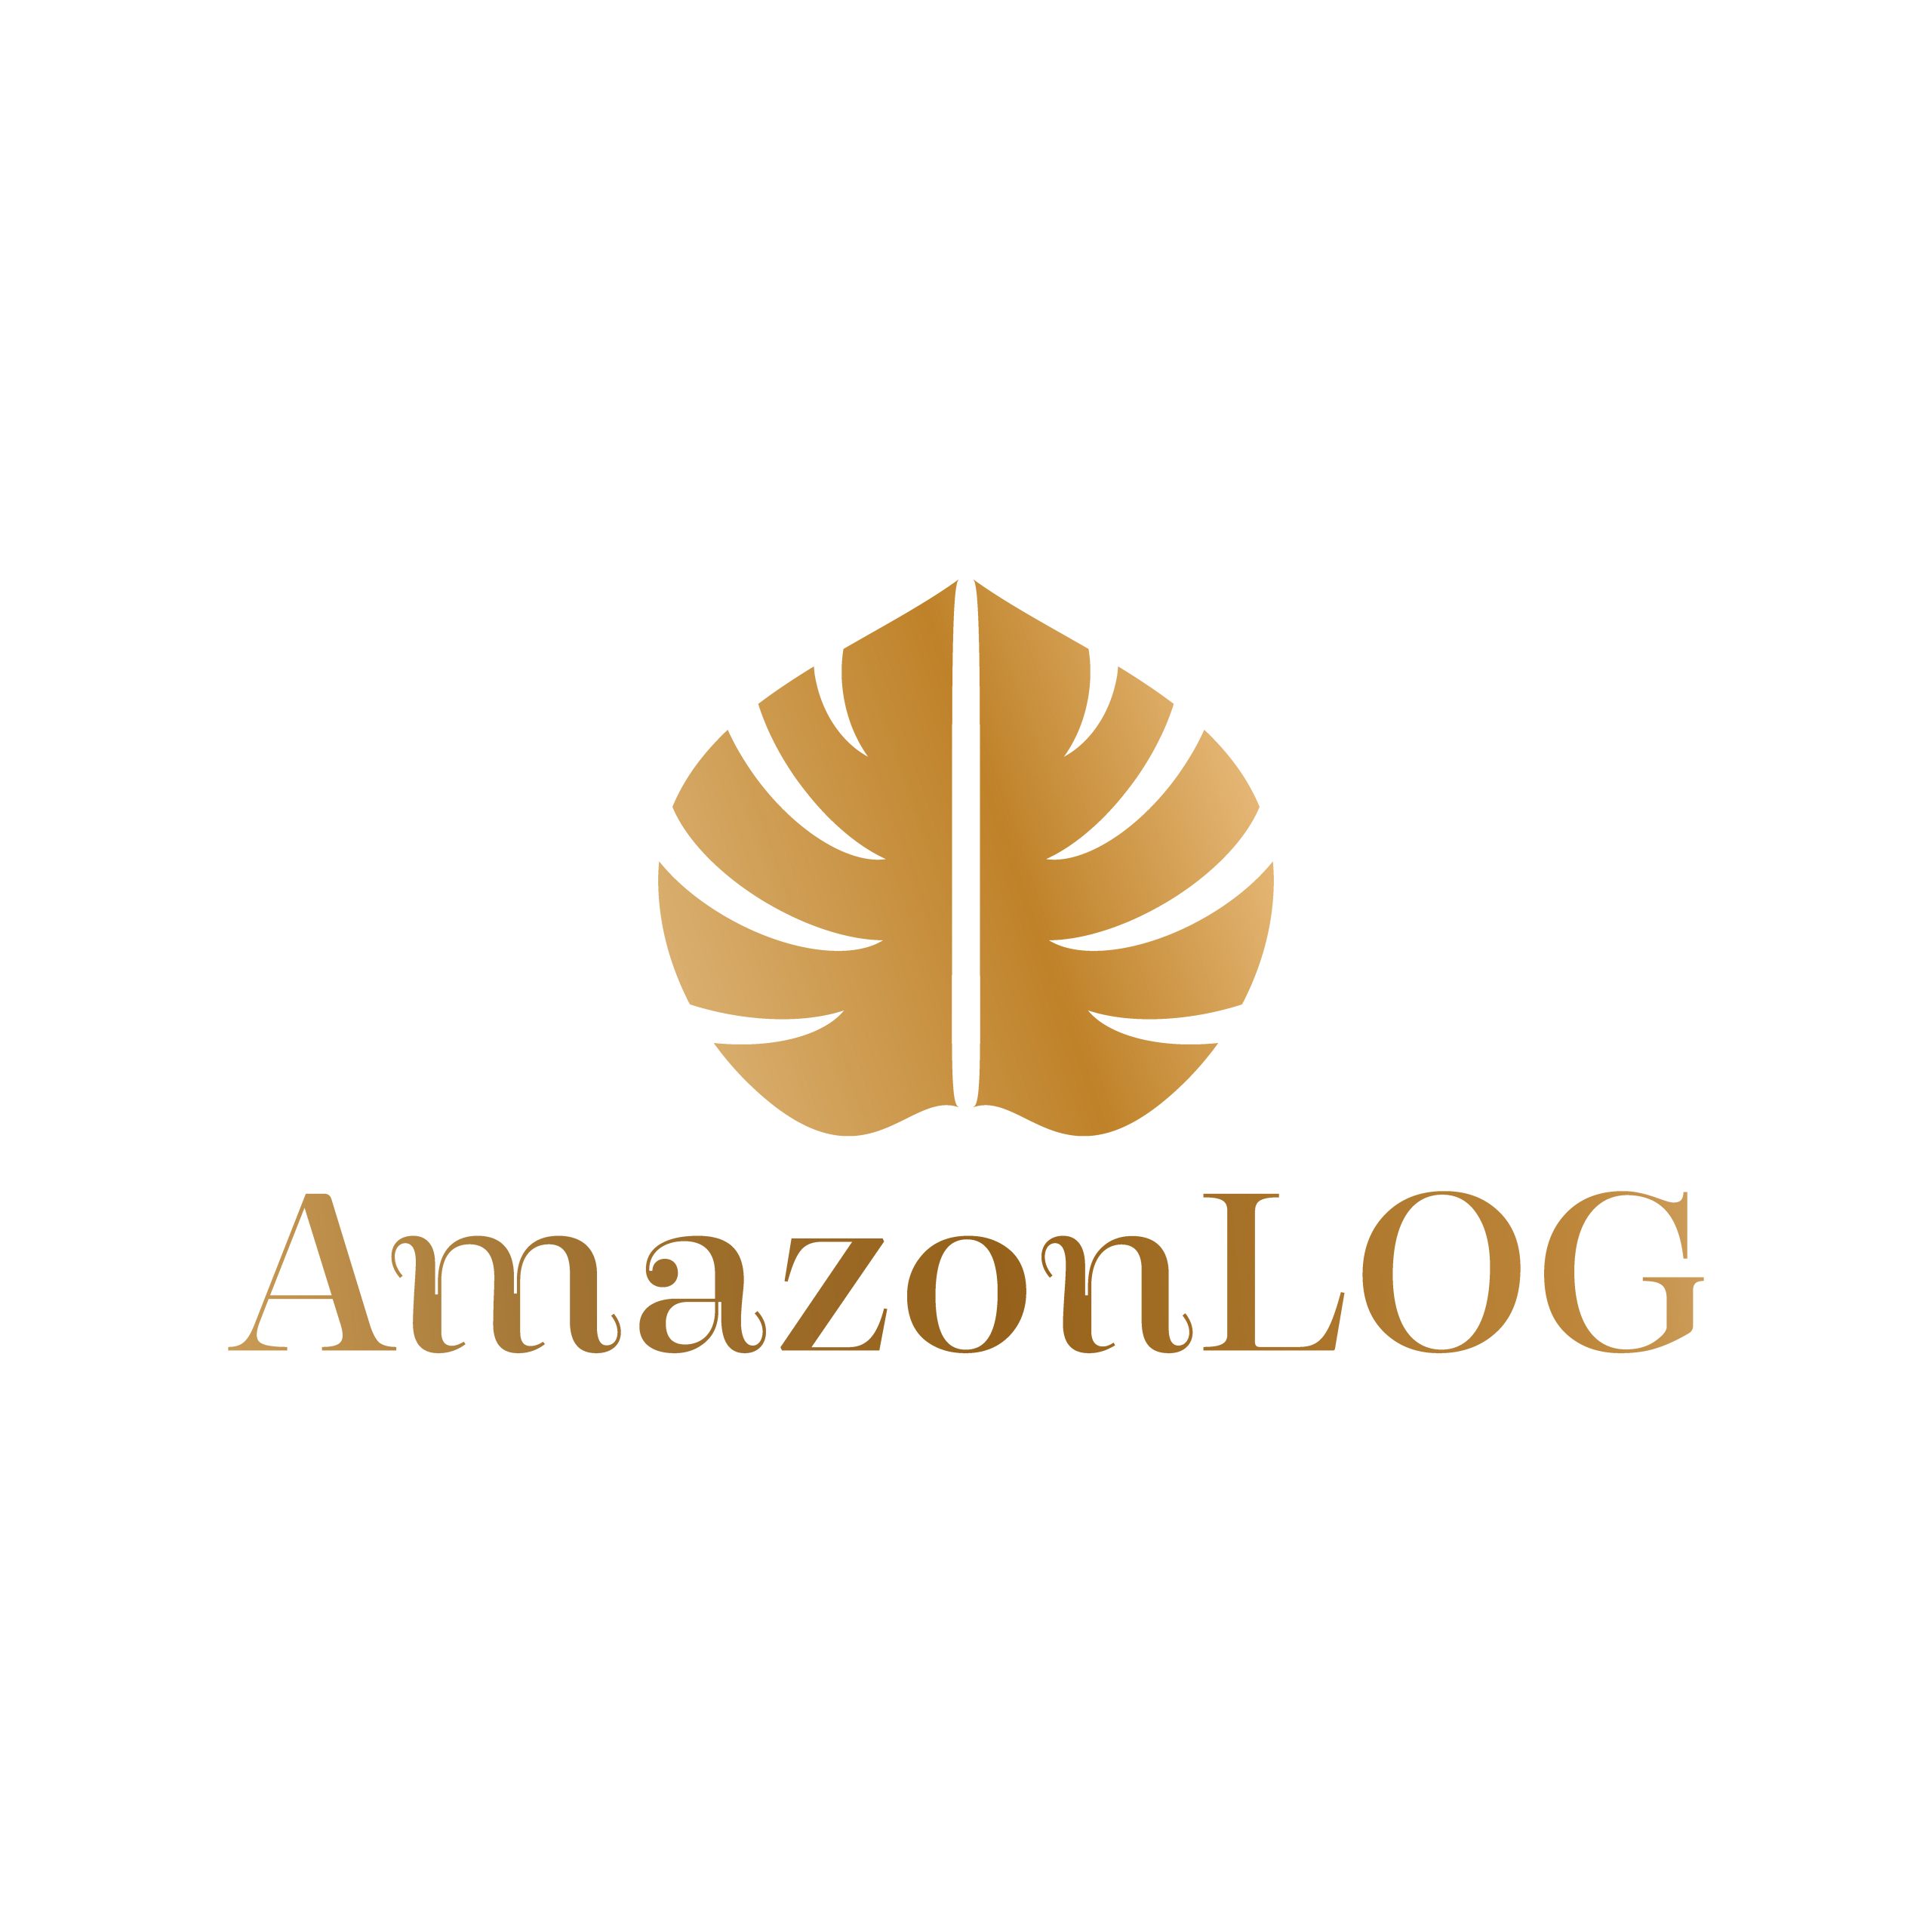 Amazonlog